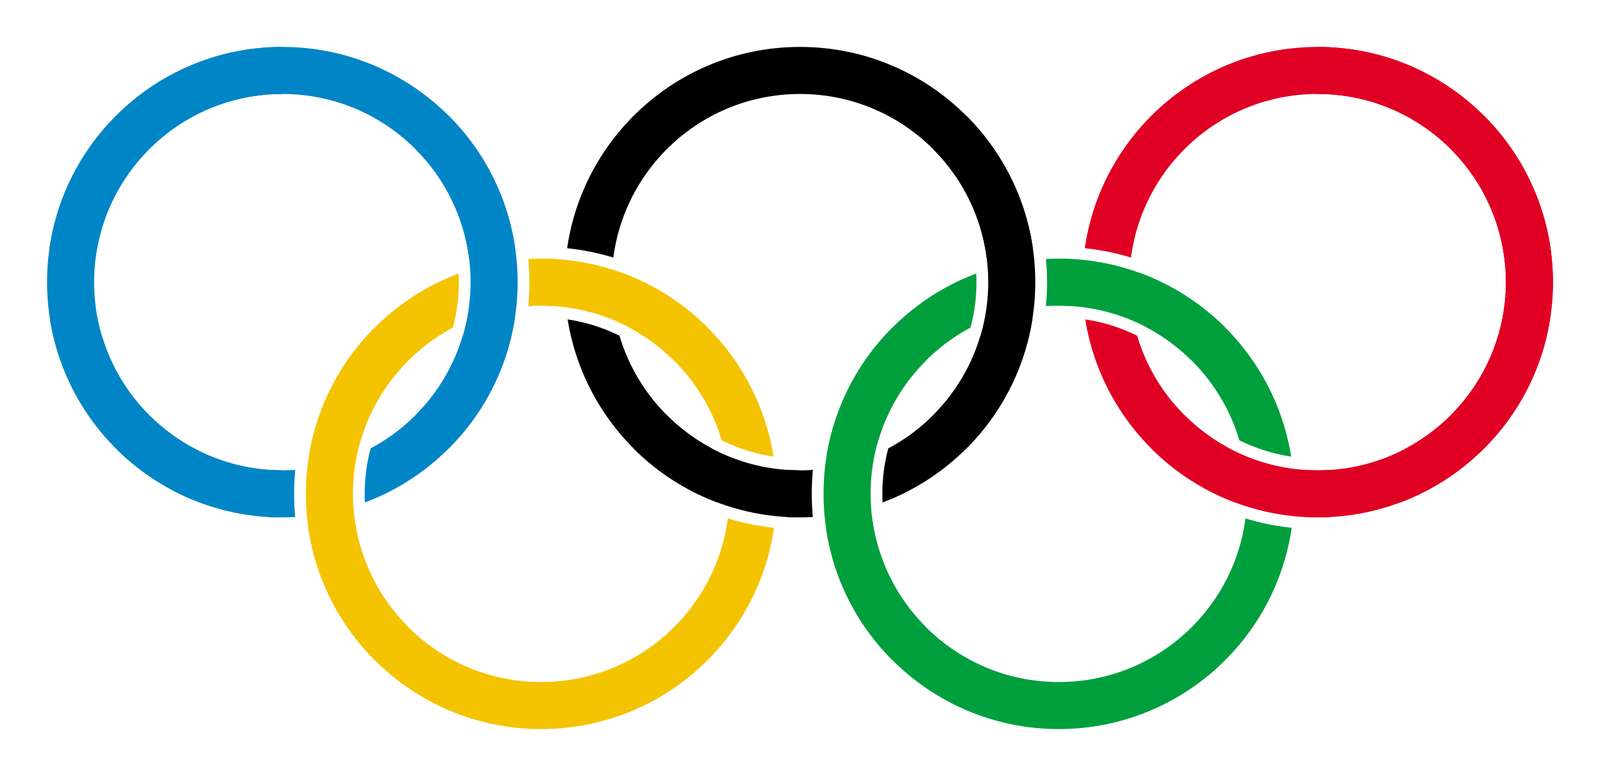 Juegos Olímpicos puzzle online a partir de foto